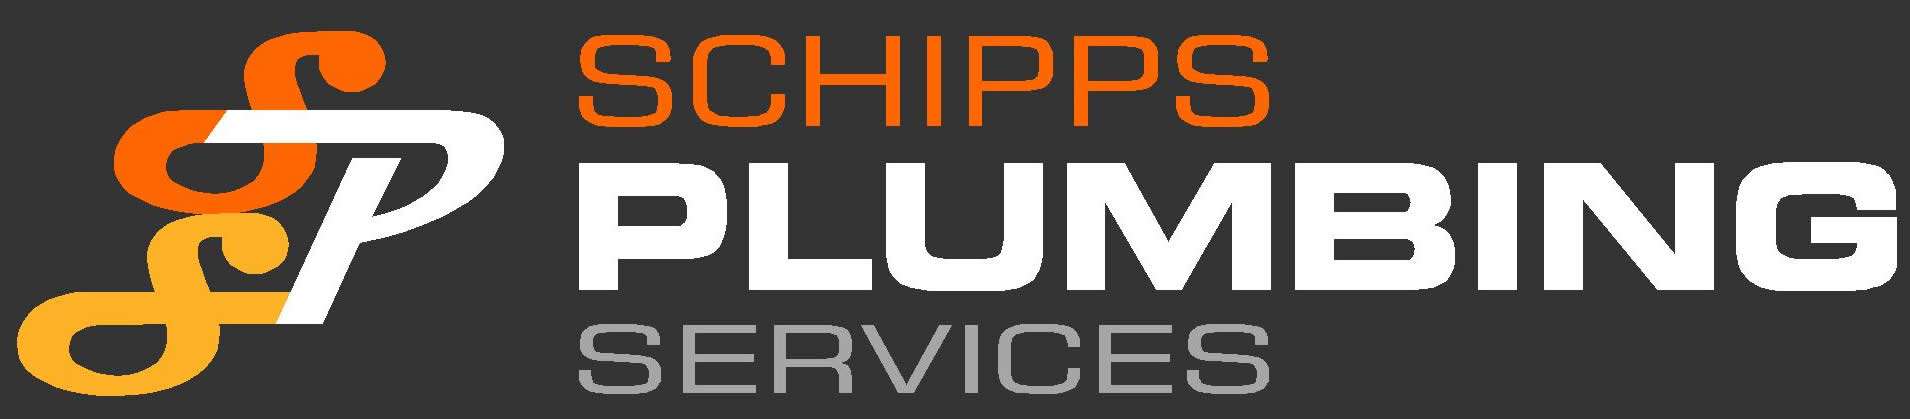 Schipps Plumbing Services